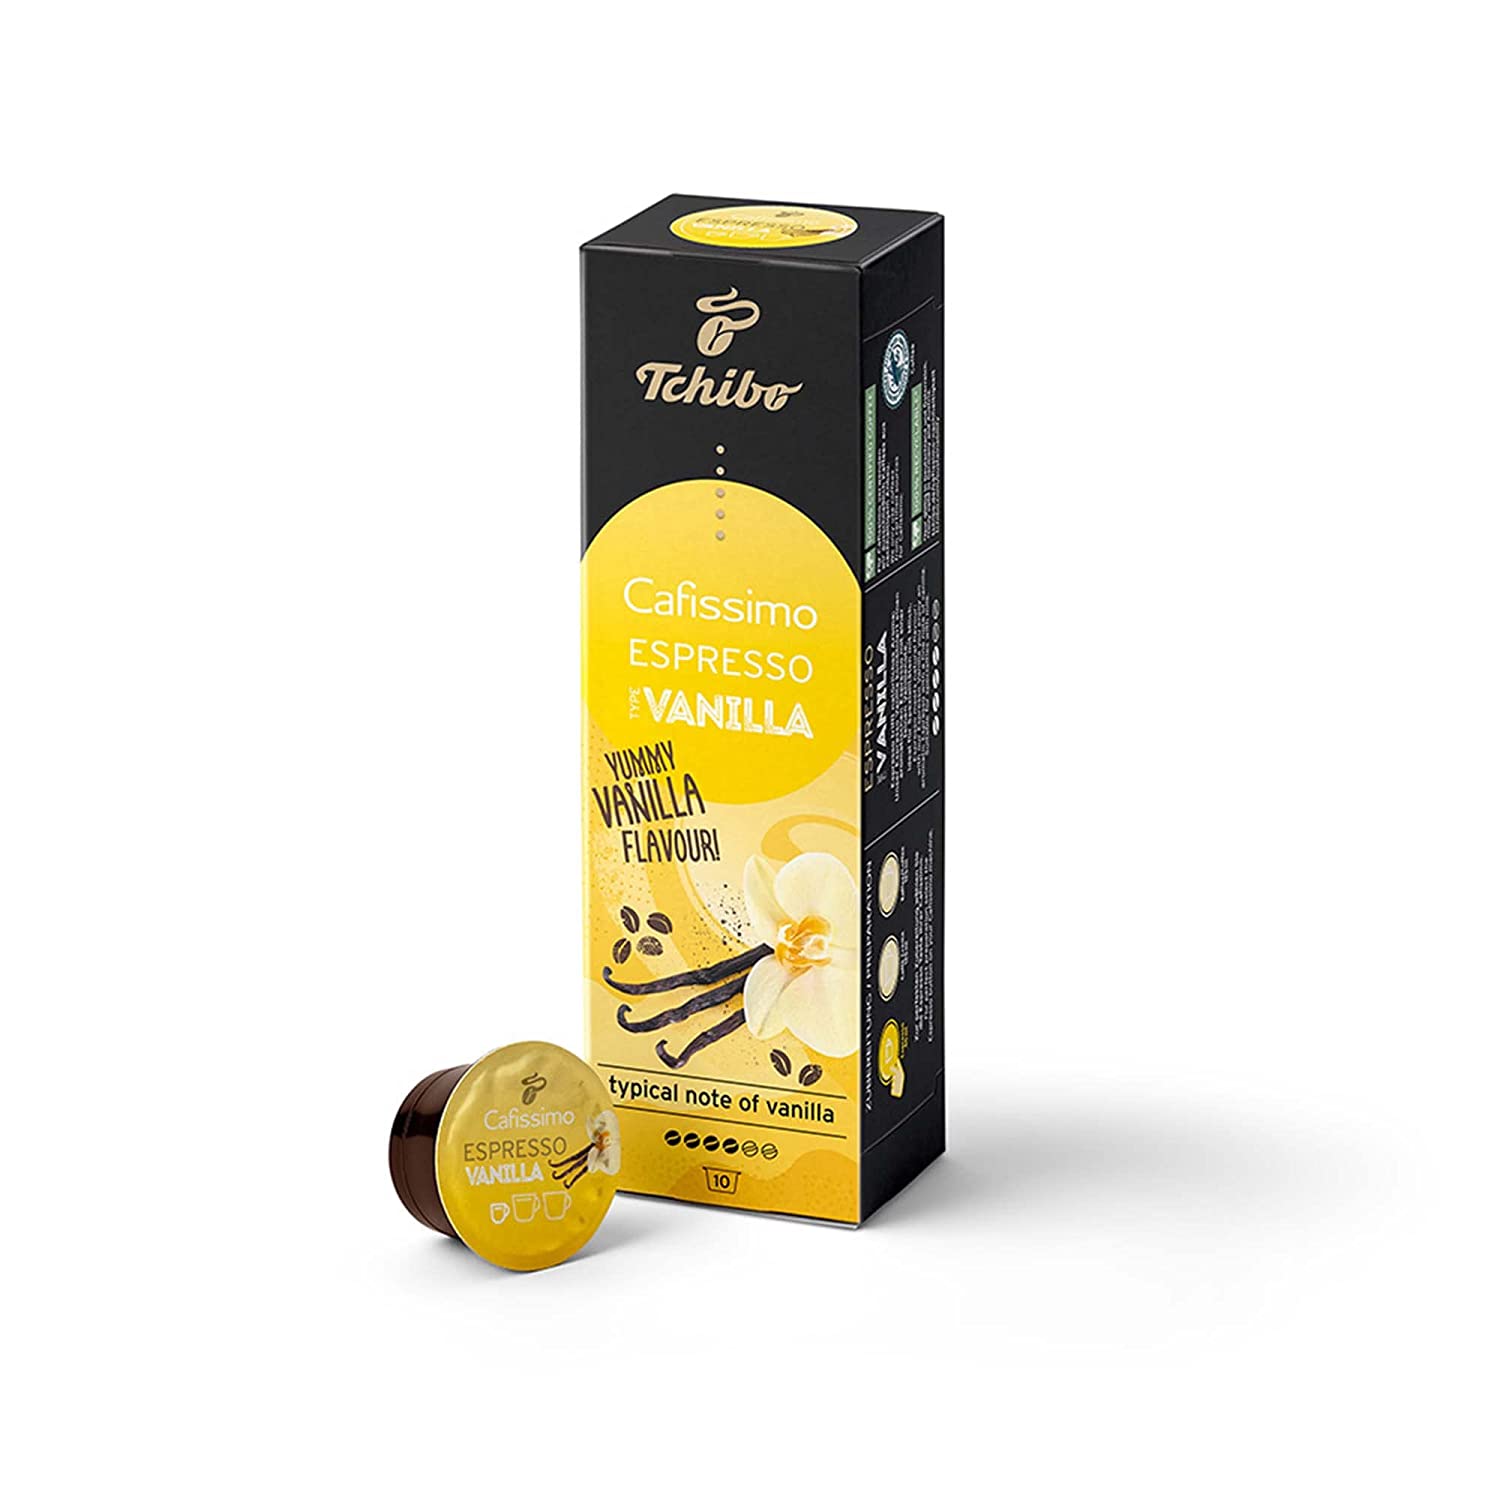 Tchibo Cafissimo Espresso Vanilla Kaffeekapseln, 10 Stück (Espresso, aromatisch mit Vanillenote), nachhaltig & fair gehandelt, Flavoured Edition